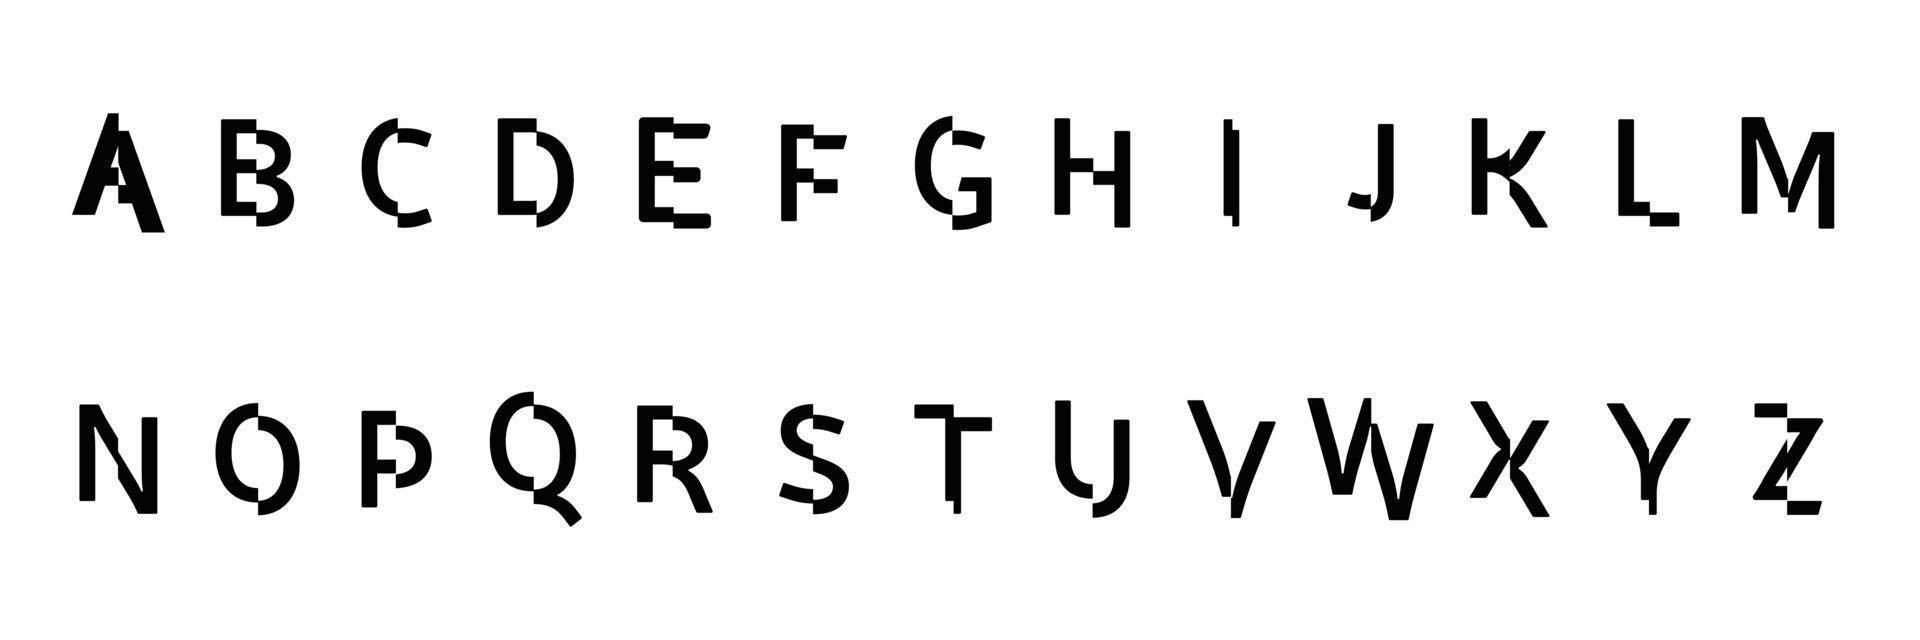 abstrakt digital modernt alfabet teckensnitt teknik typografi elektronisk dansmusik framtida kreativa teckensnitt. vektor illustration